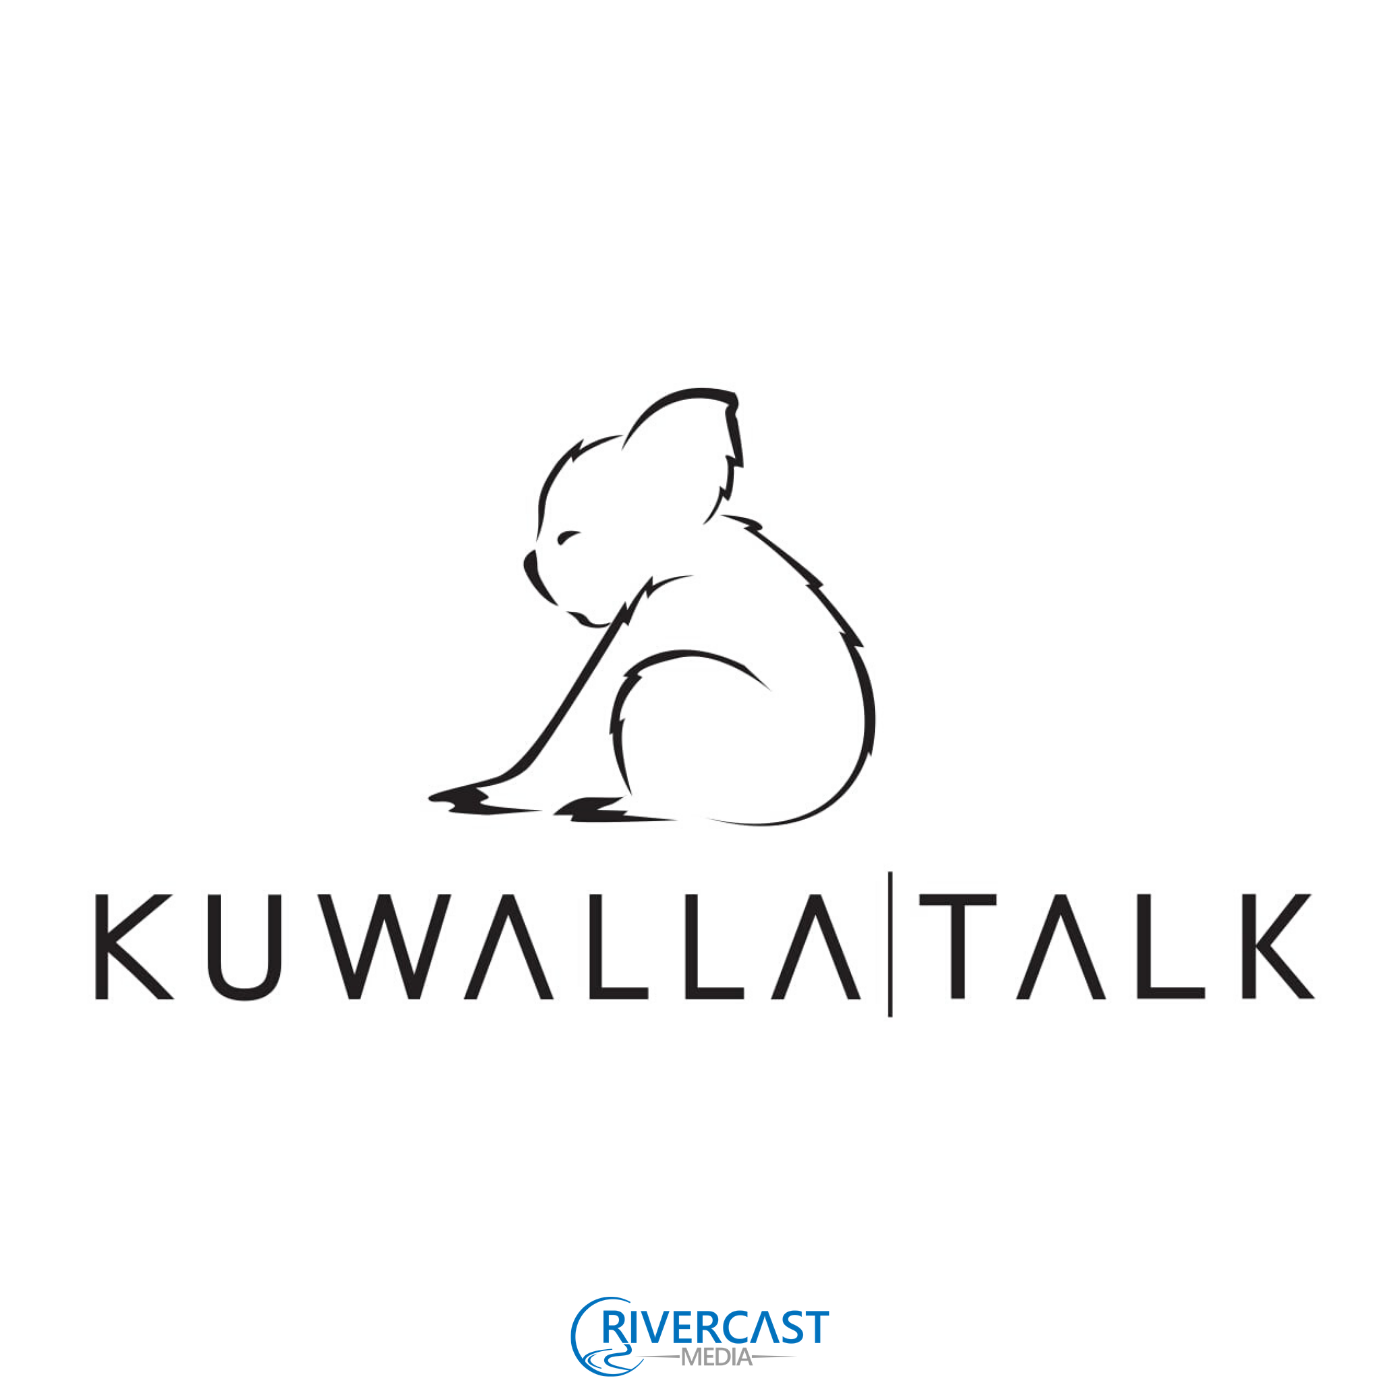 Kuwalla|Talk